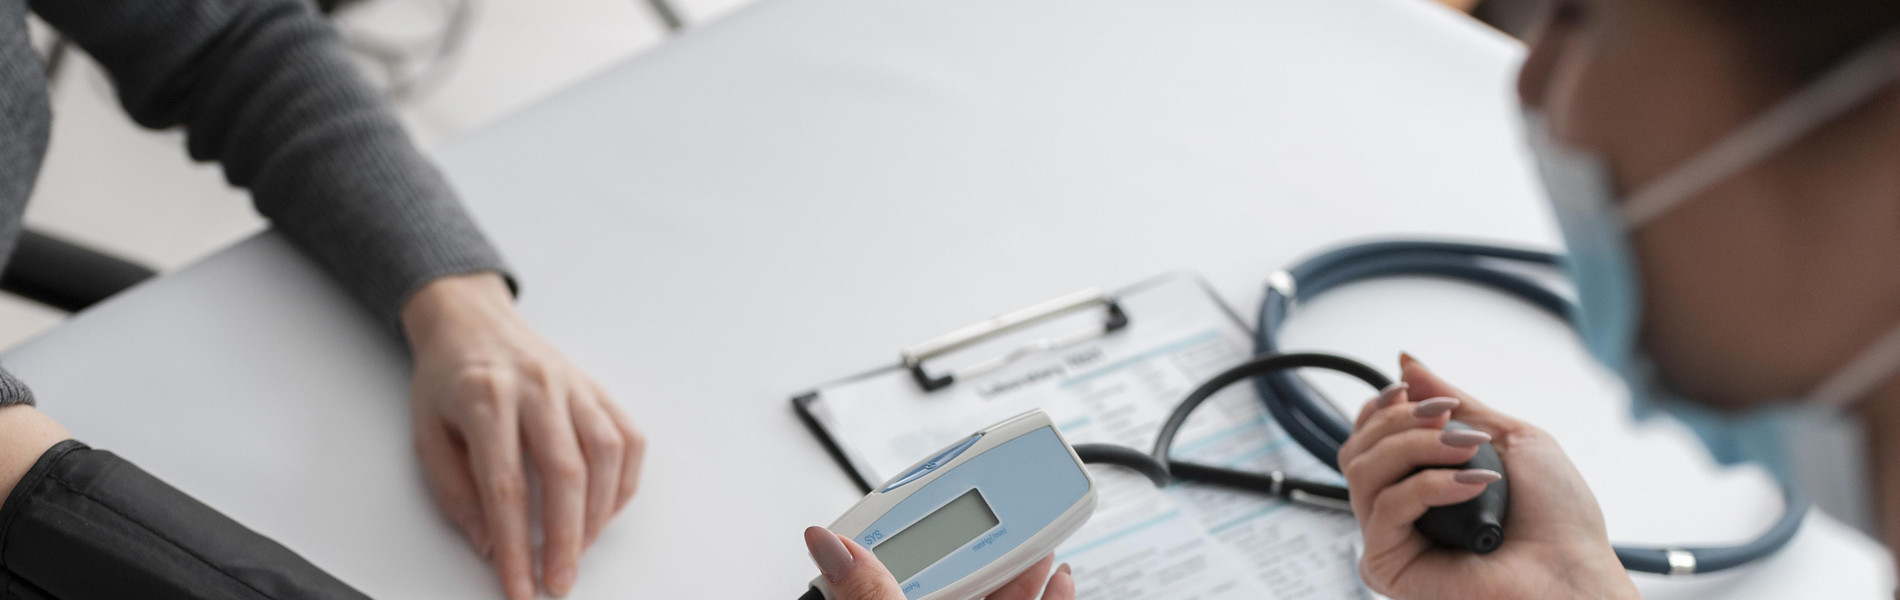 Medical Check-Up: Pengertian, Rentang Harga, dan Hubungannya untuk Asuransi Kesehatan.jpg